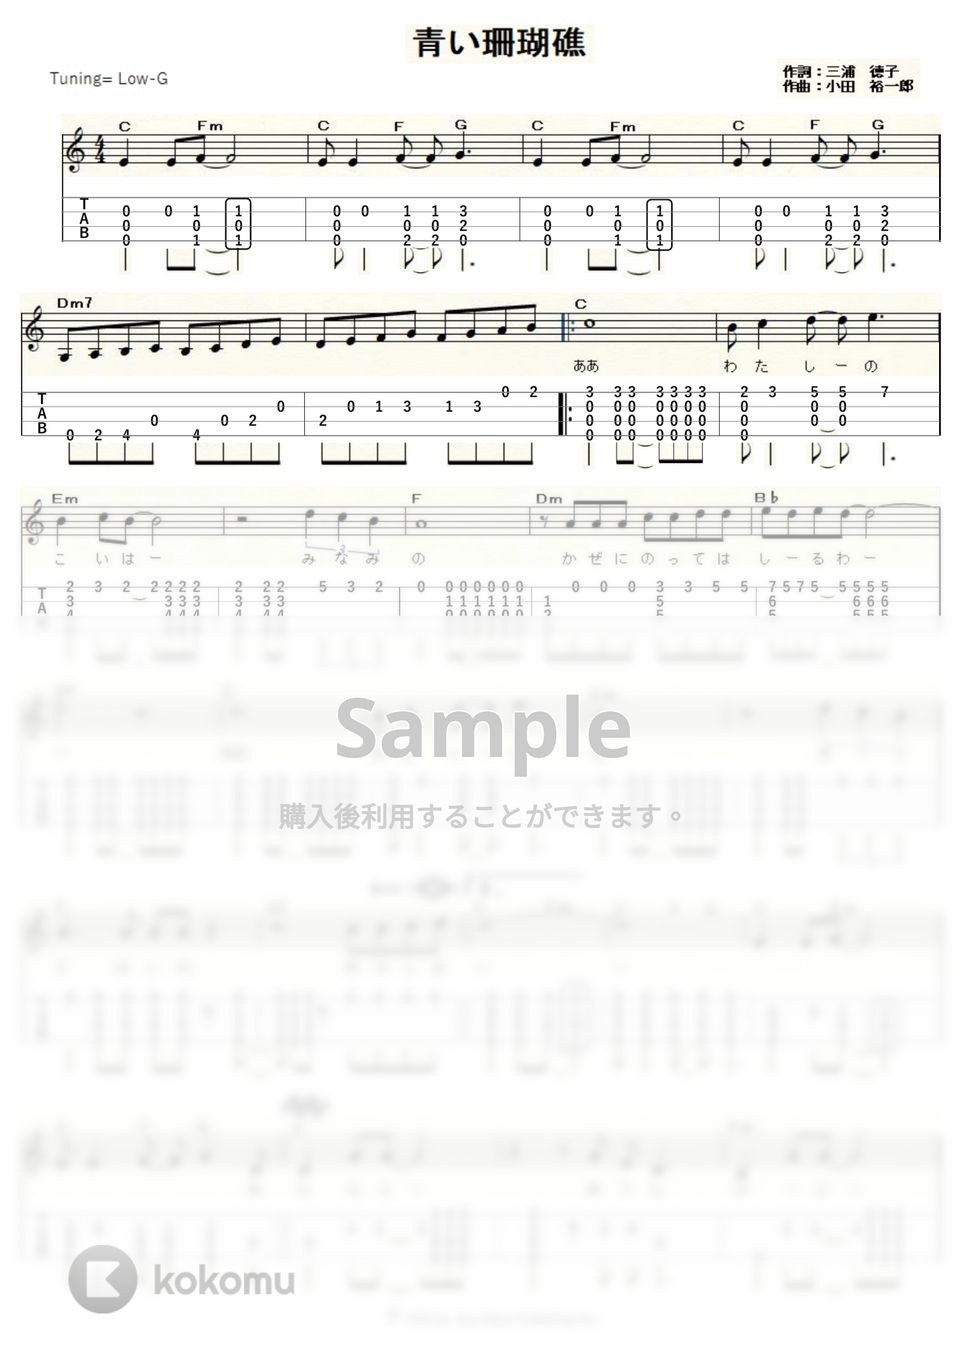 松田聖子 - 青い珊瑚礁 (ｳｸﾚﾚｿﾛ / Low-G / 中～上級) by ukulelepapa